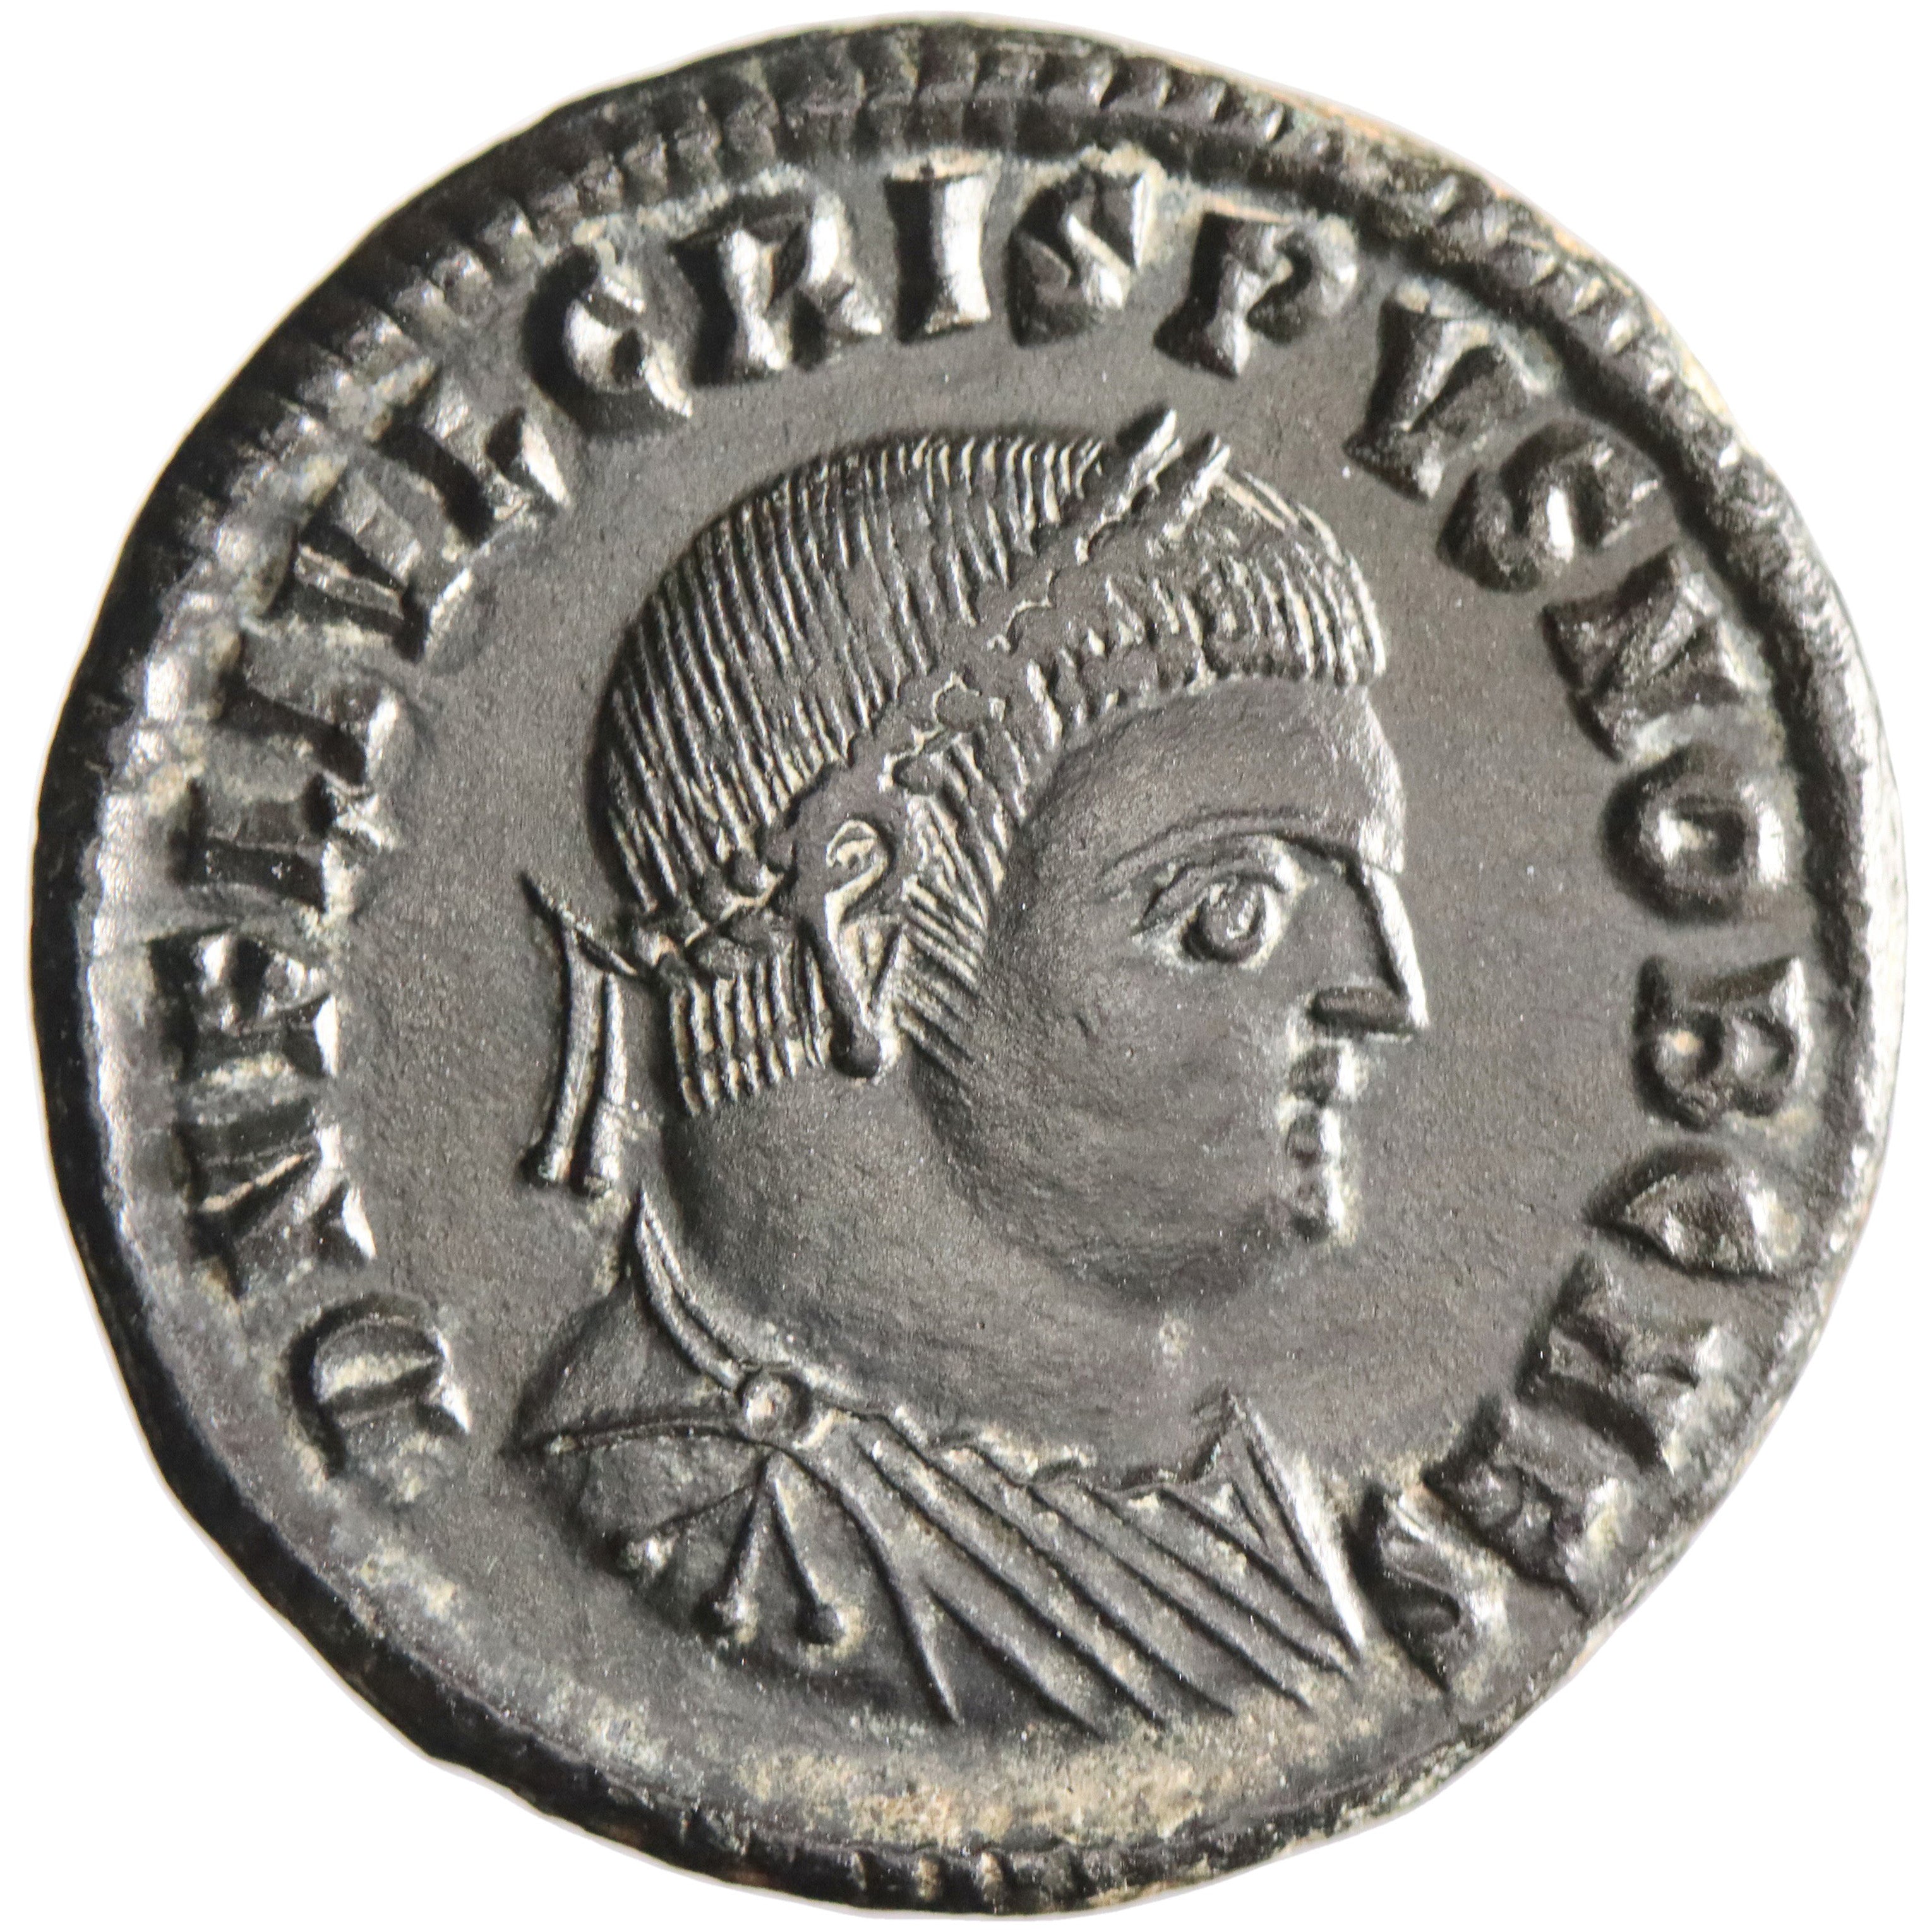 Roman Empire, Crispus, as Caesar, bronze nummus, Cyzicus mint, 321-324 CE, Jupiter